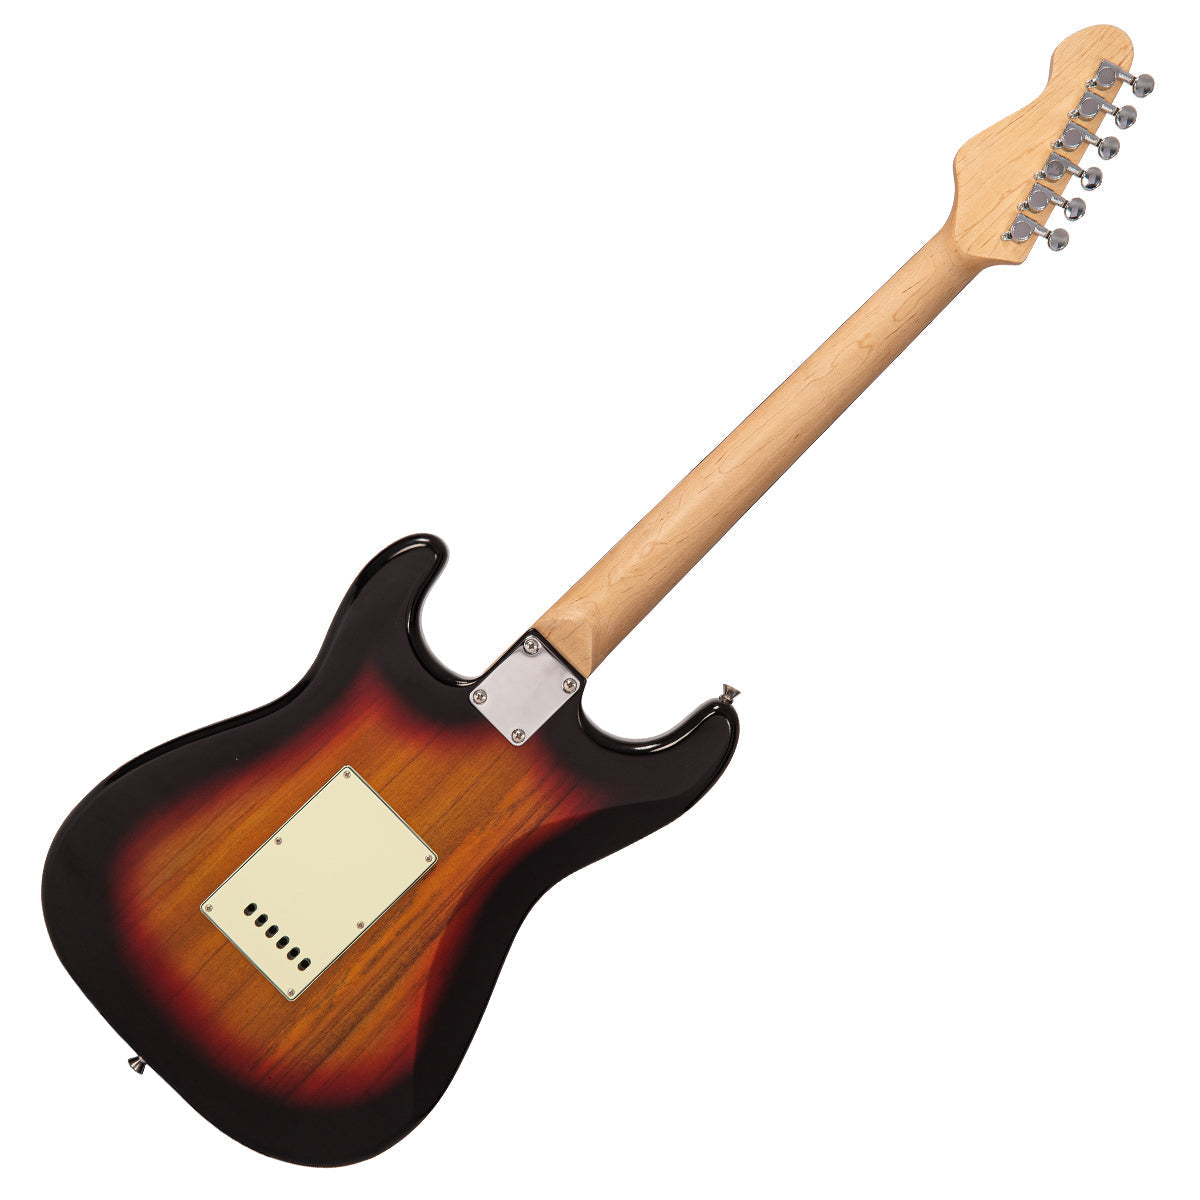 Vintage V60 Coaster Series Electric Guitar ~ 3 Tone Sunburst, Electric Guitar for sale at Richards Guitars.